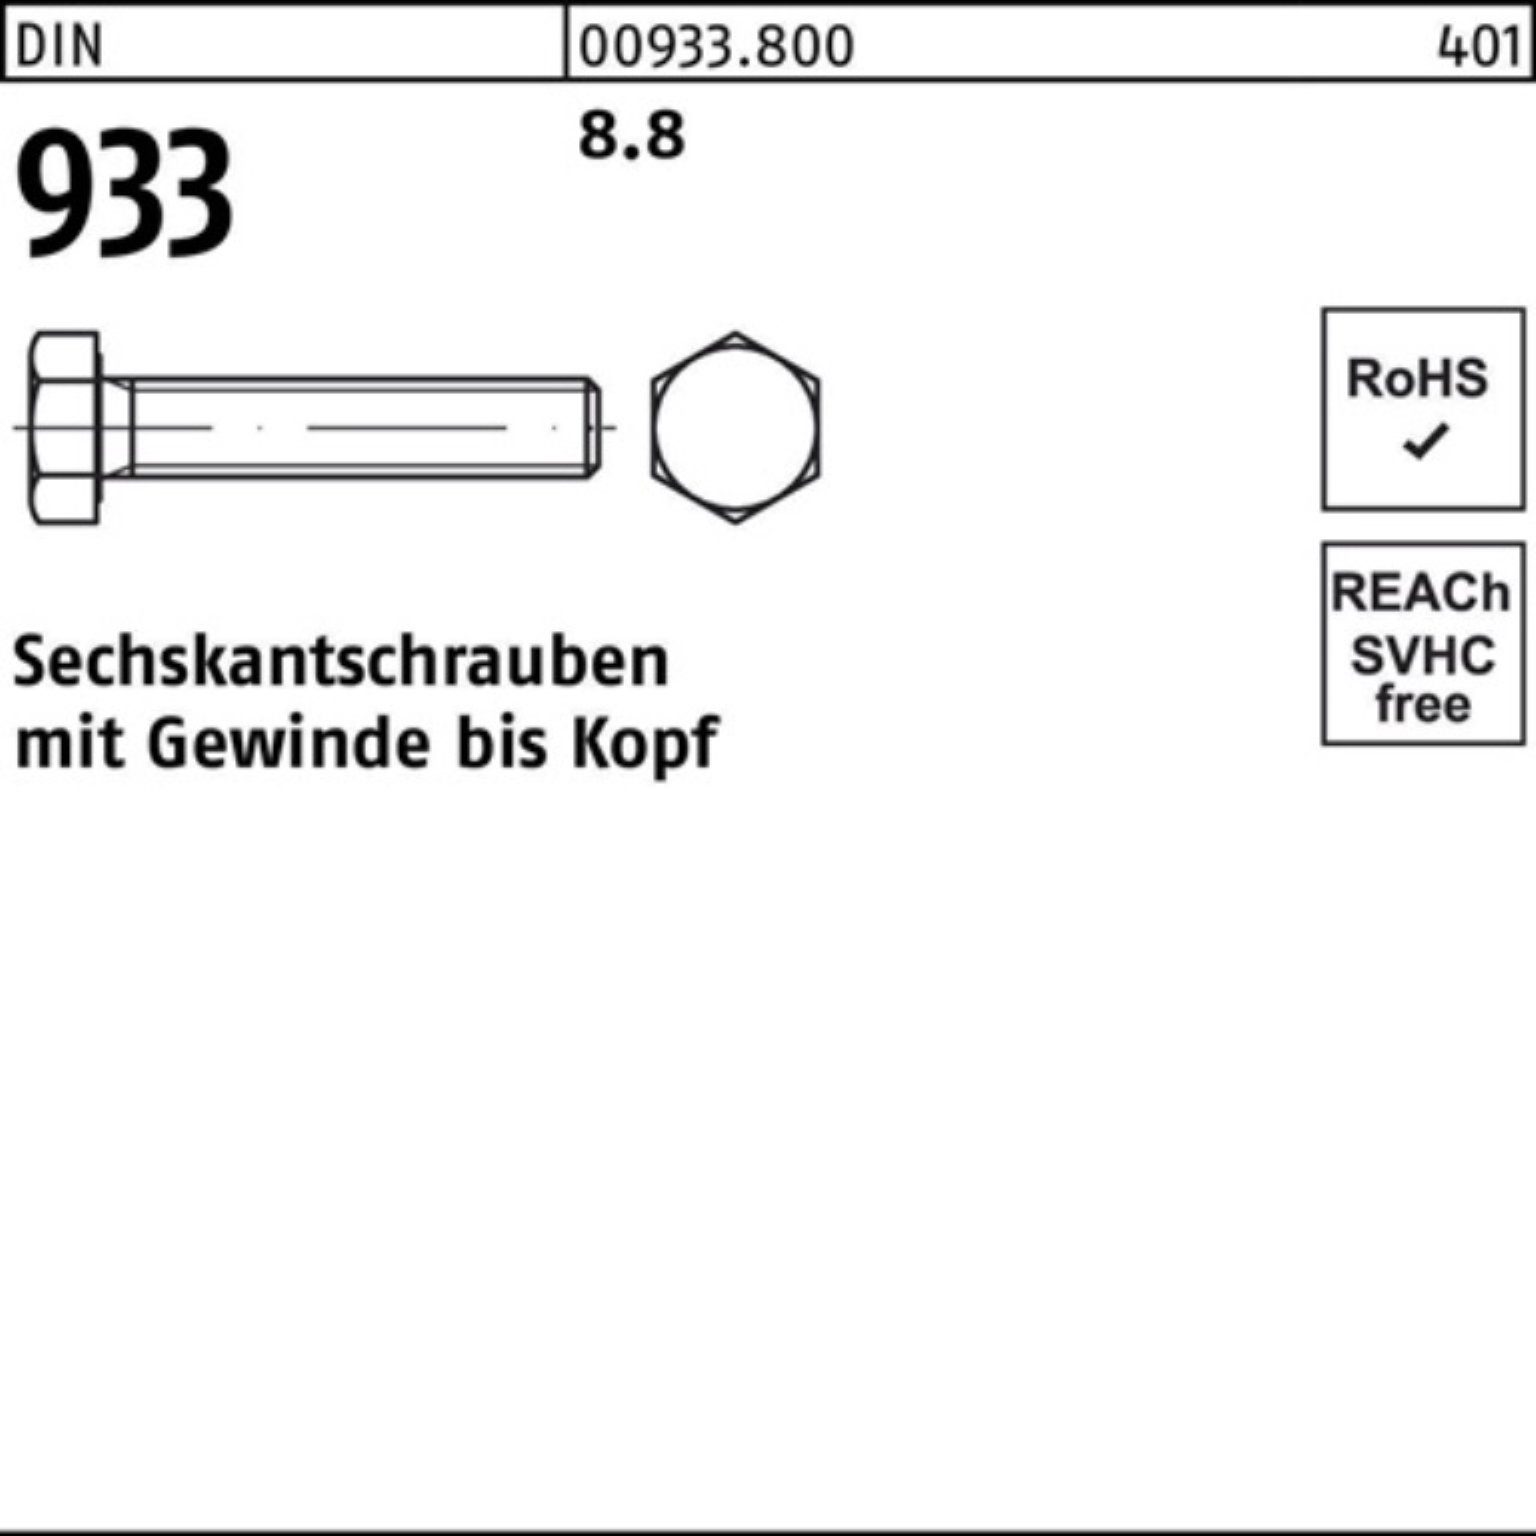 DIN Sechskantschraube Pack 16 933 DIN M10x VG 8.8 Sechskantschraube Reyher 933 Stück 200 200er